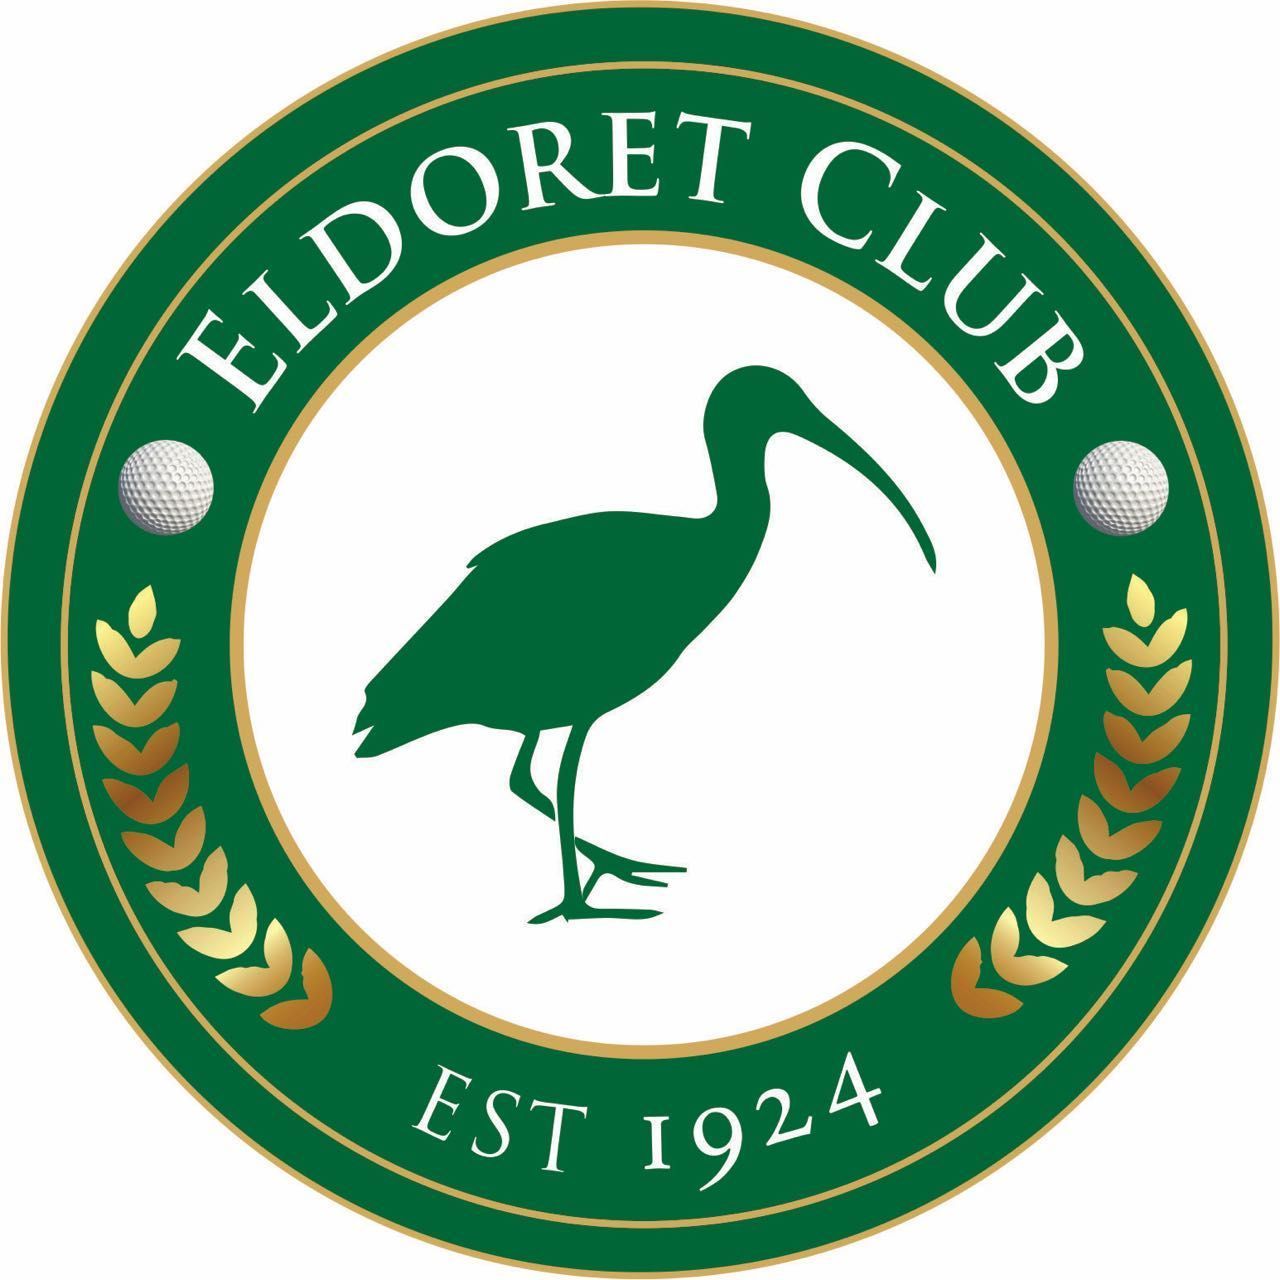 Eldoret Club SRM Listed tender